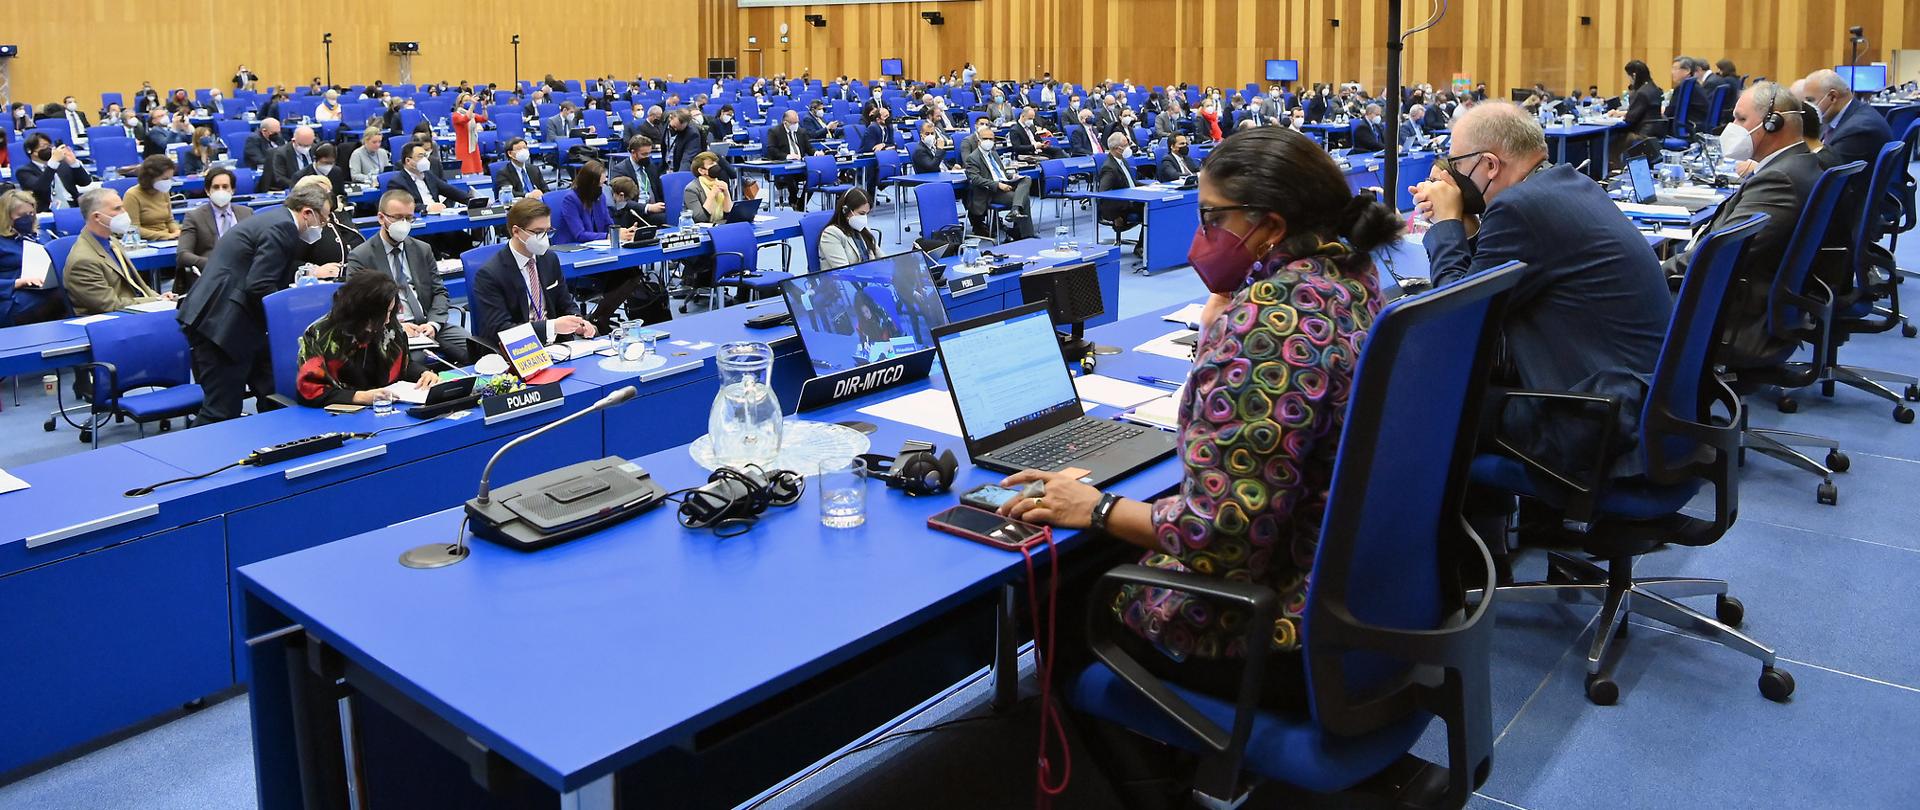 Nadzwyczajne posiedzenie Rady Gubernatorów MAEA - sala plenarna. Uczestnicy siedzą przy niebieskich stołach. Na pierwszym planie kobieta ubrana w kolorowy żakiet patrzy się w ekran laptopa.